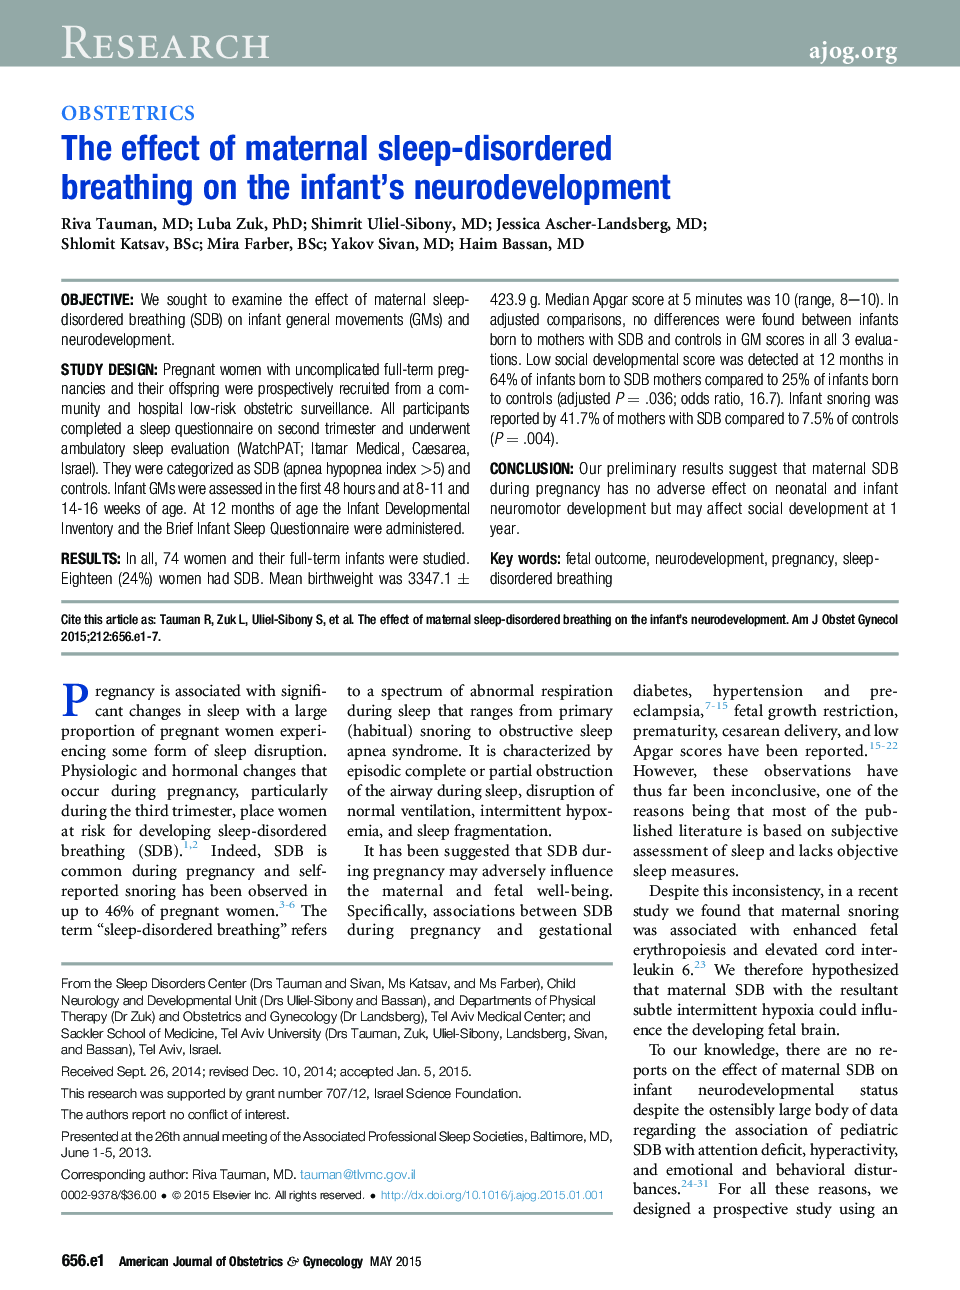 اثر تنفس اختلال خواب مادر در رشد عصبی نوزاد 